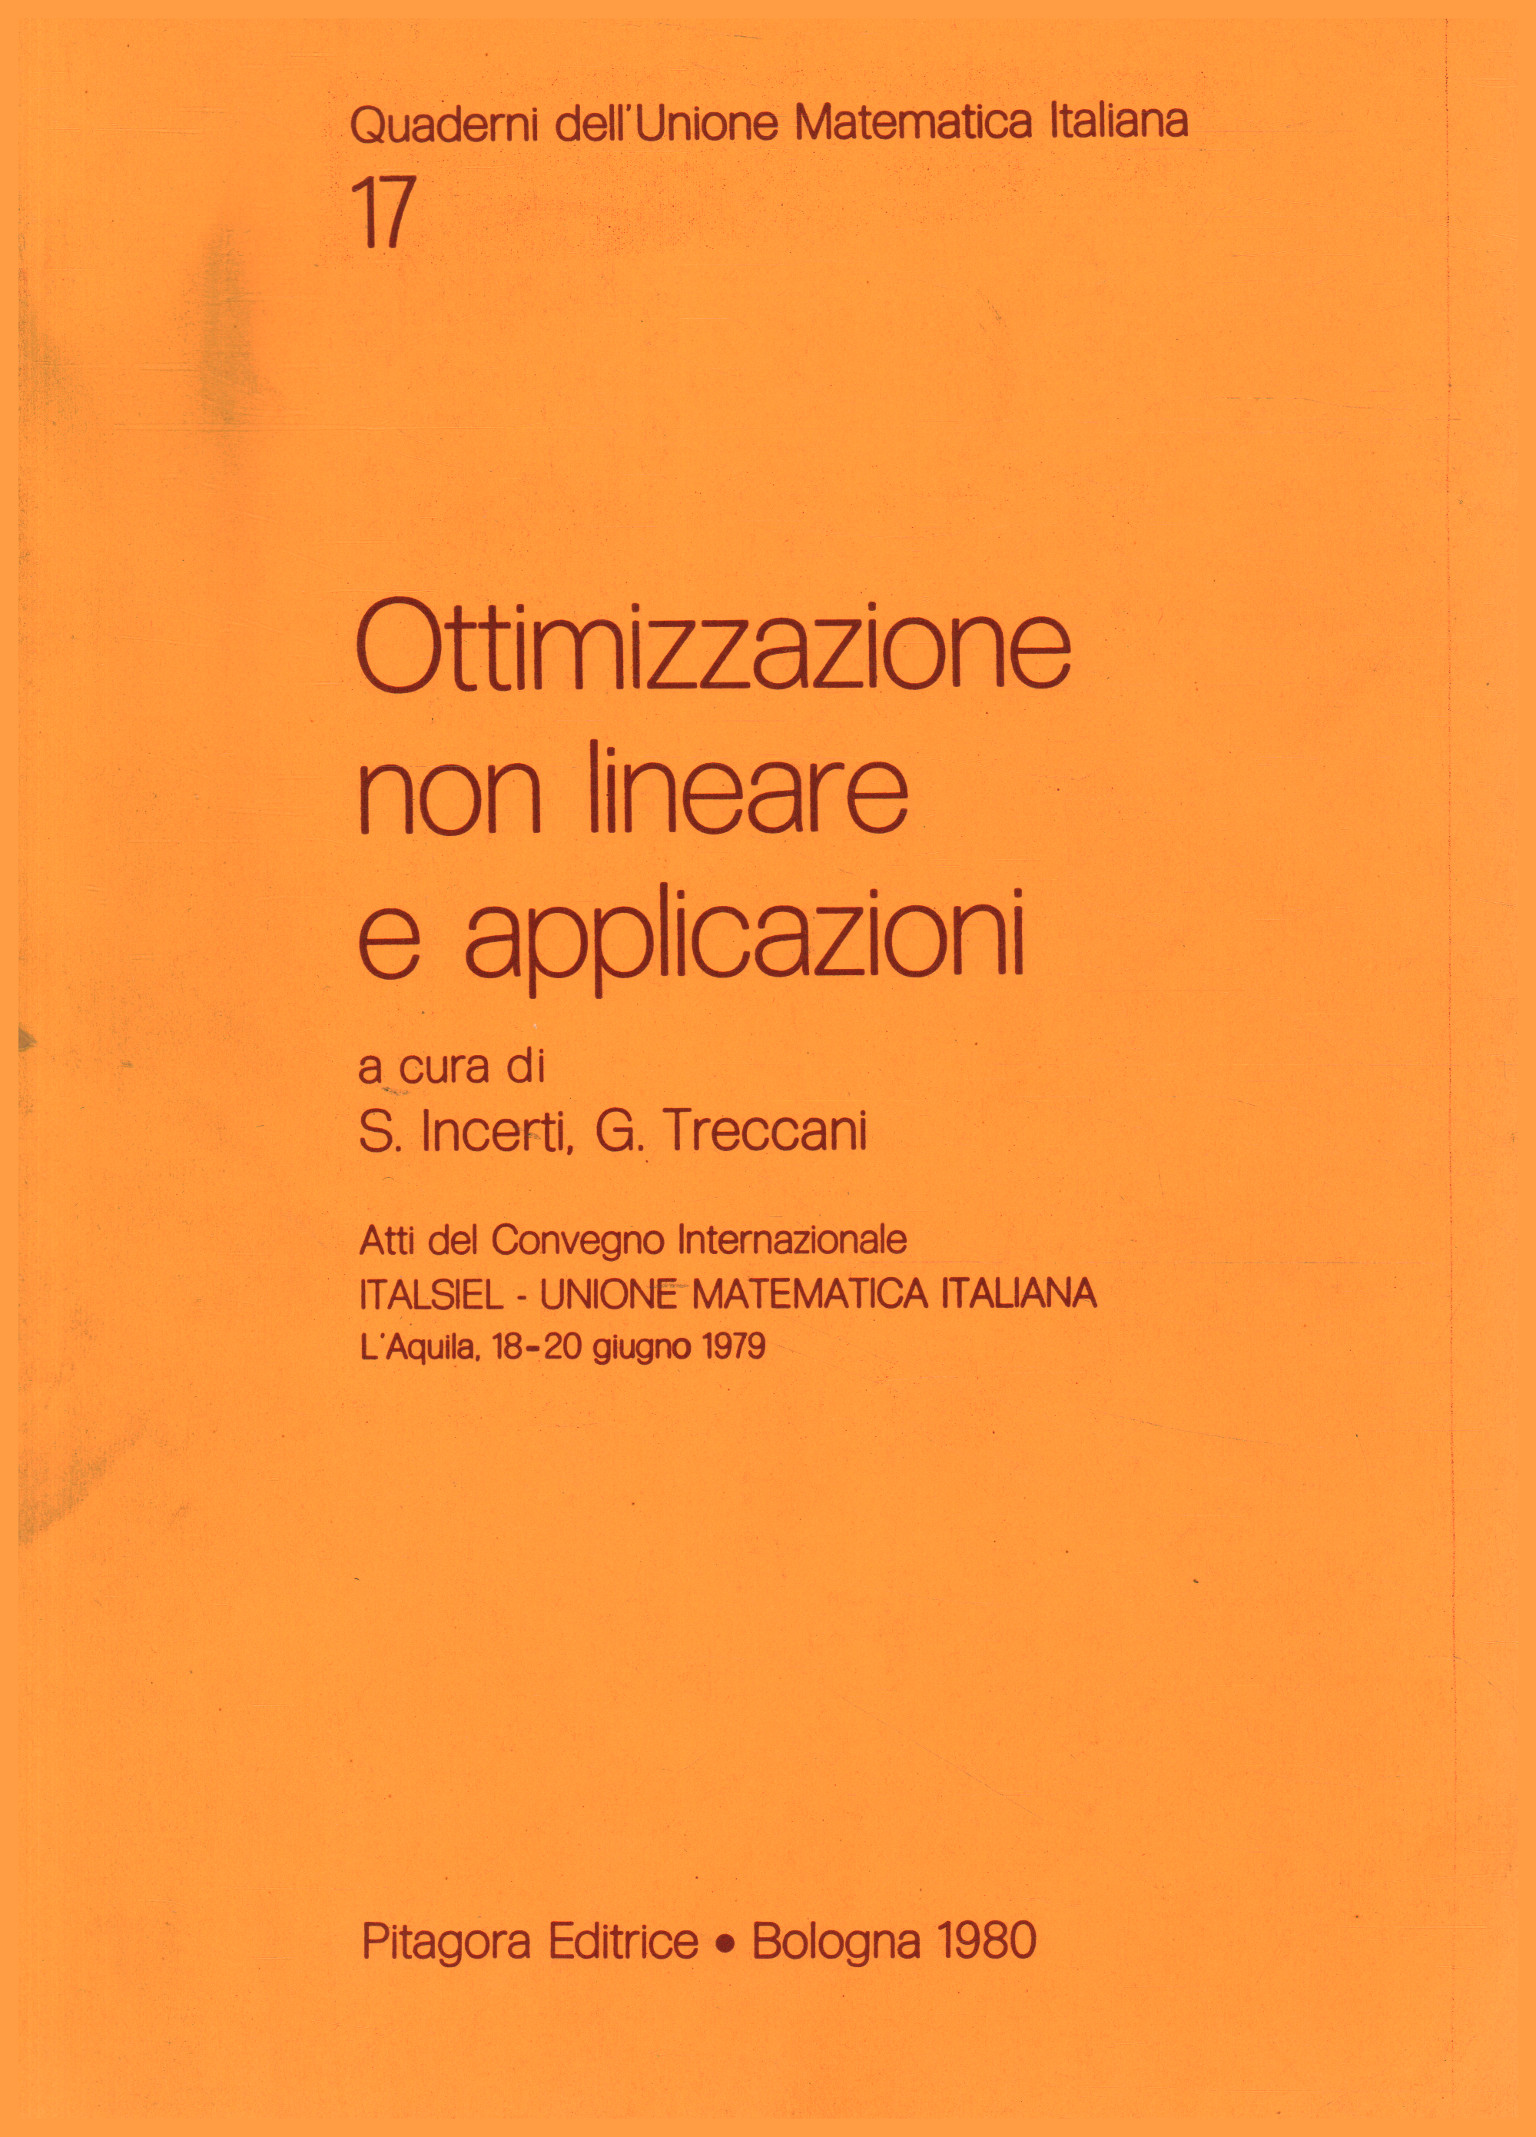 Nichtlineare Optimierung und Anwendungen, S. Incerti G. Treccani